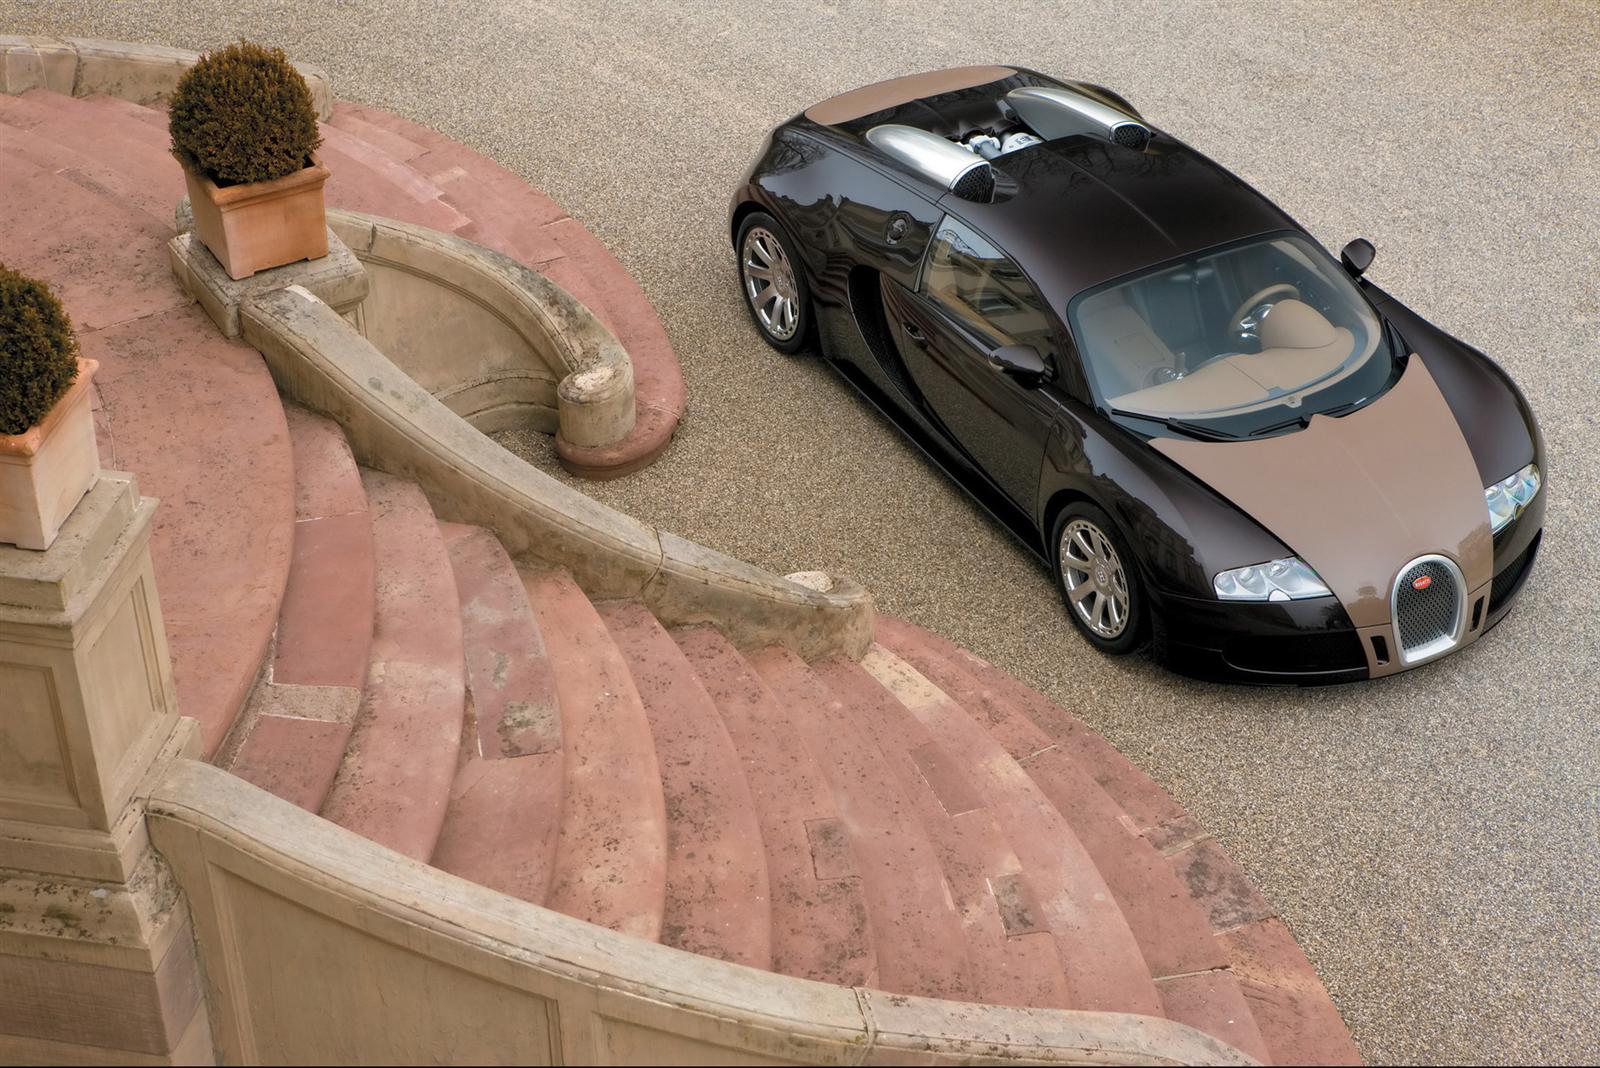 2008 Bugatti Veyron Fbg par Hermès